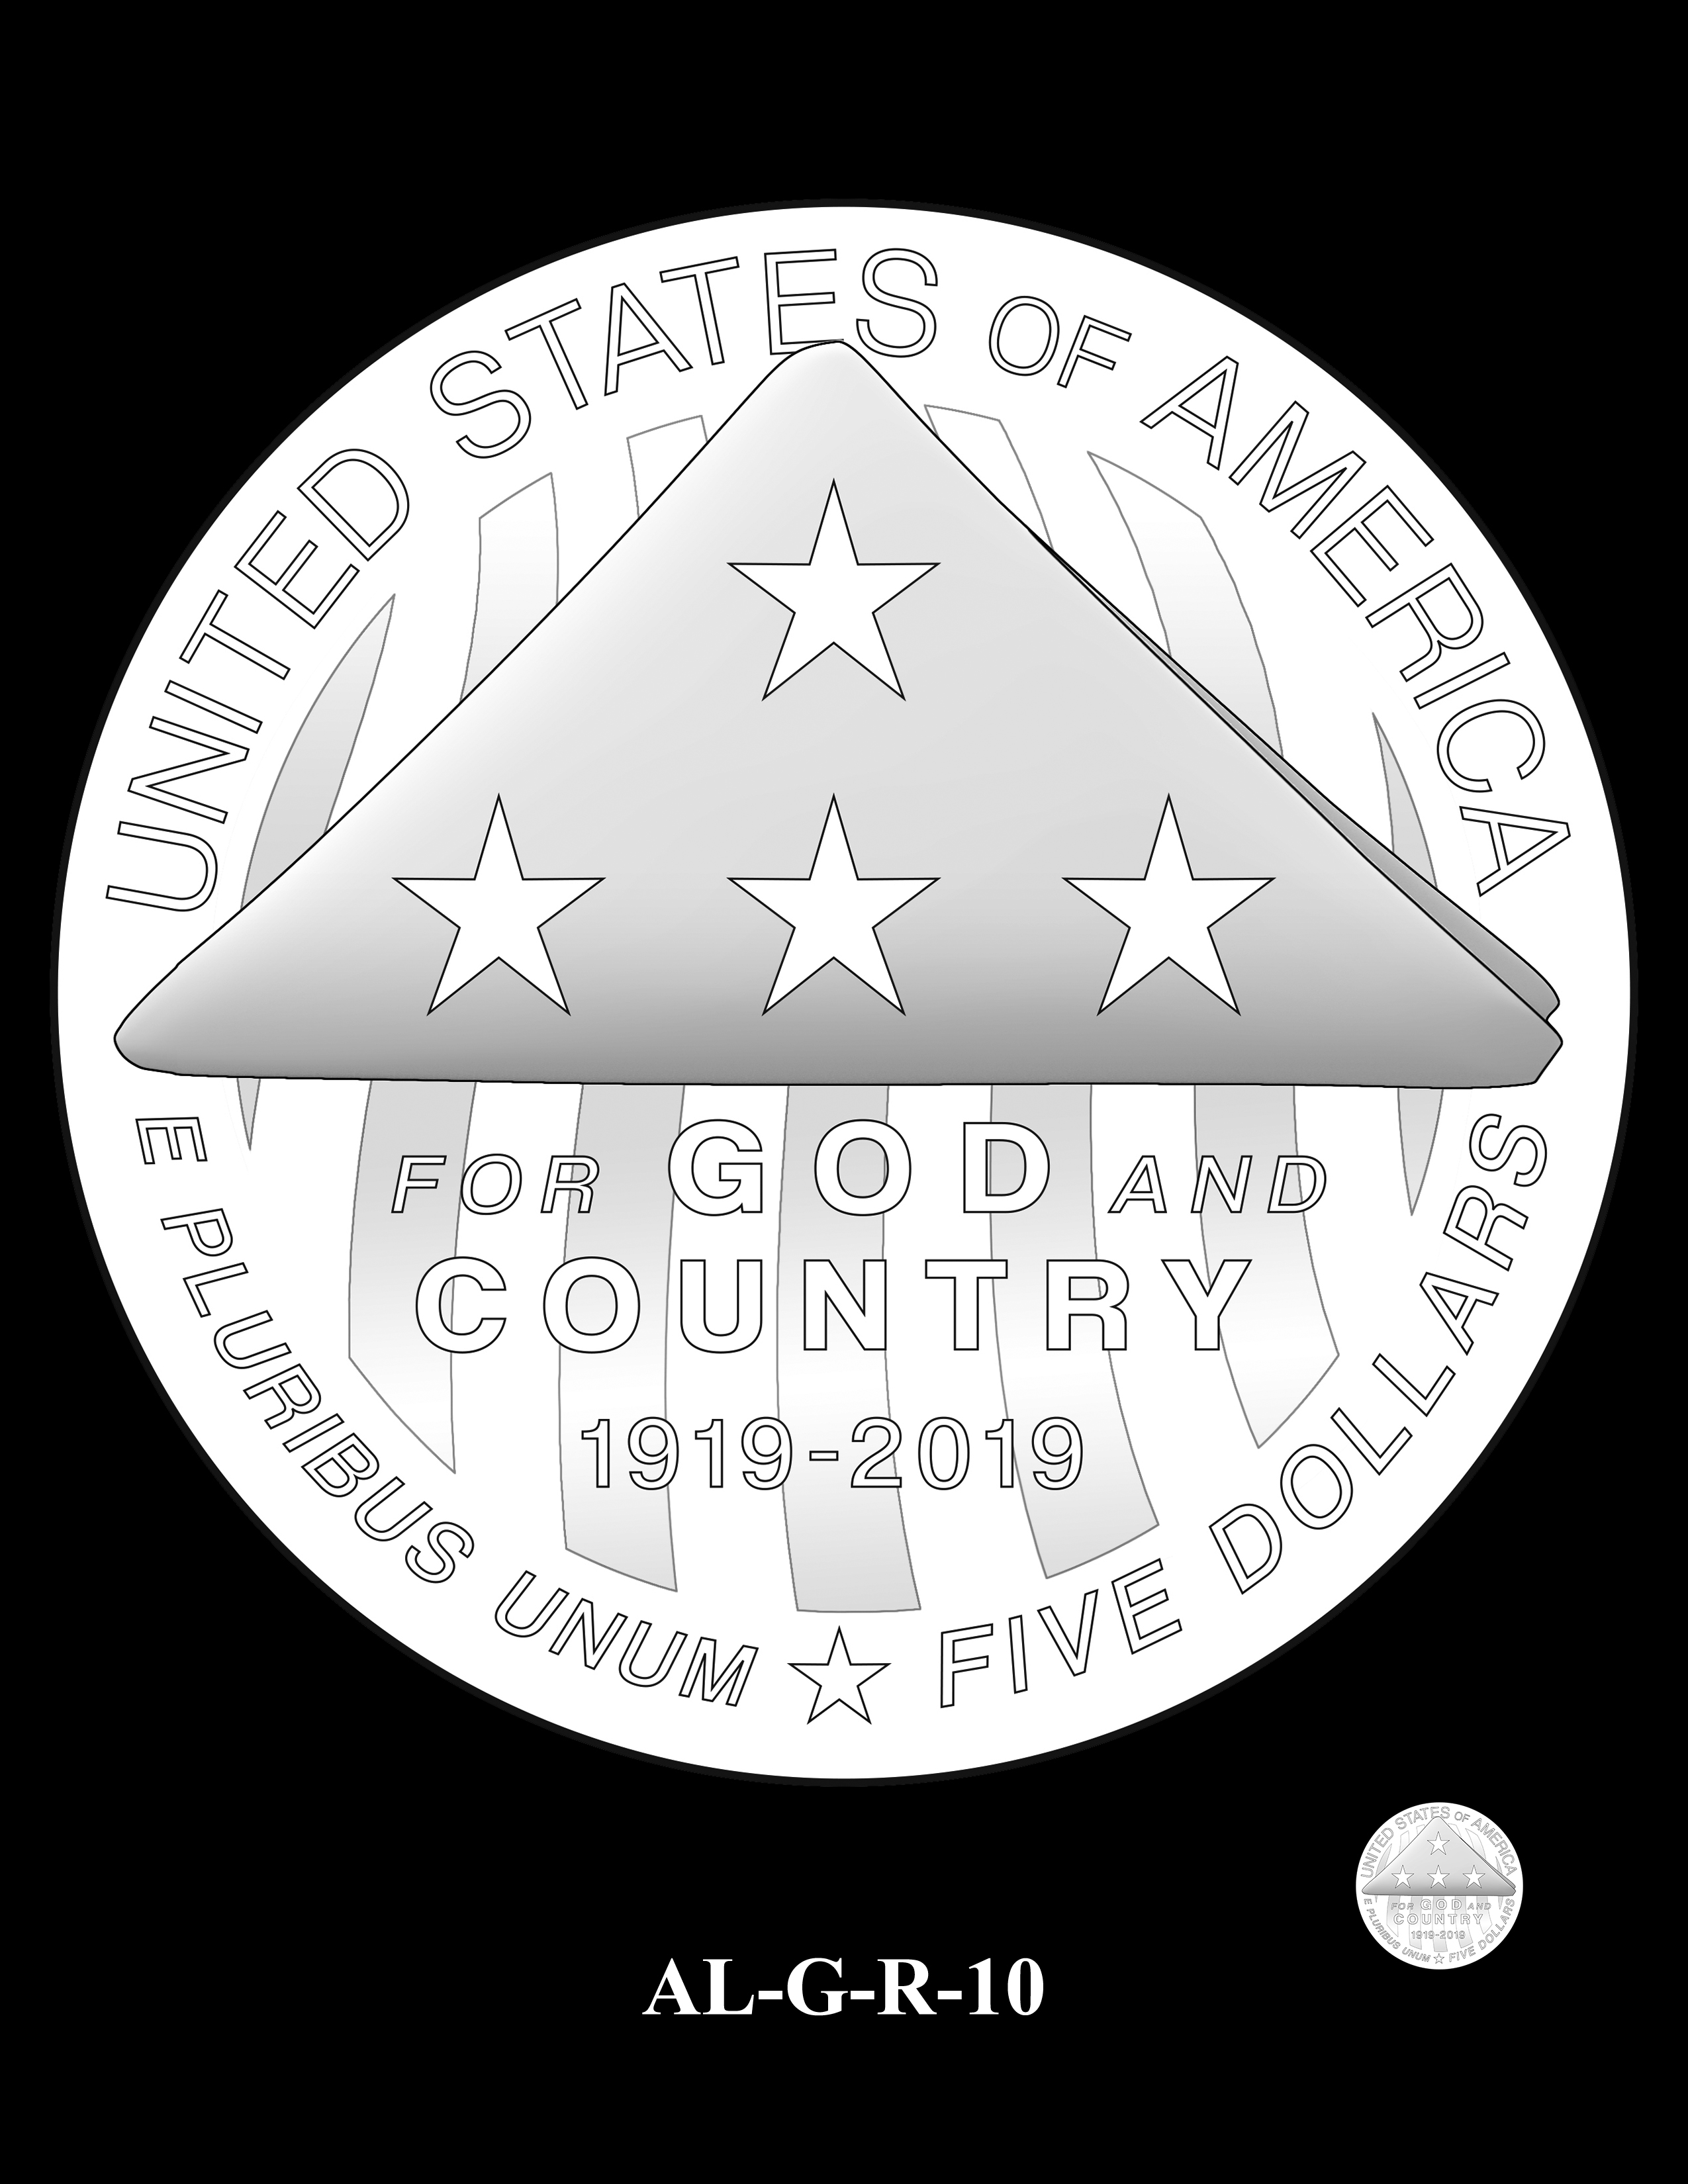 AL-G-R-10 -- 2019 American Legion 100th Anniversary Commemorative Coin Program - Gold Reverse